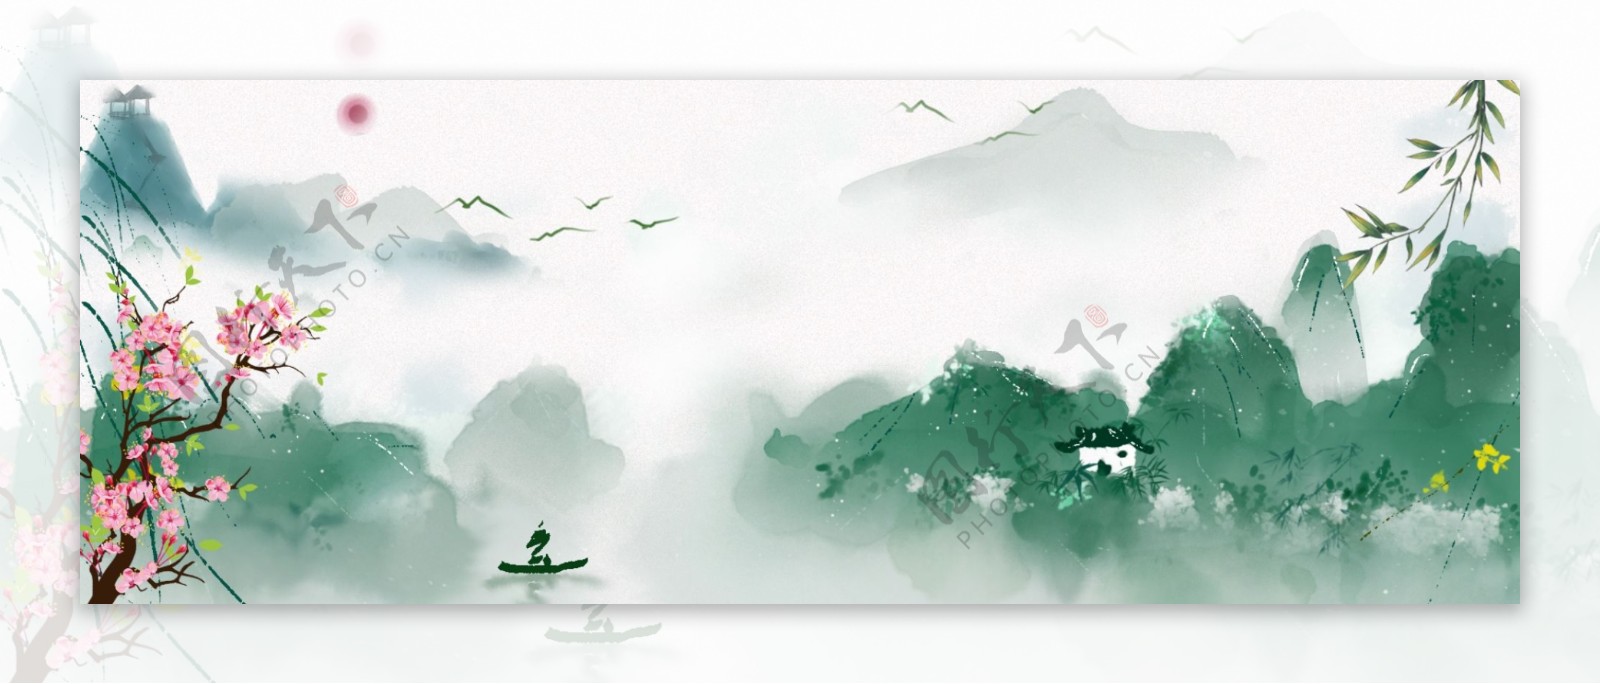 中国风风景banner图